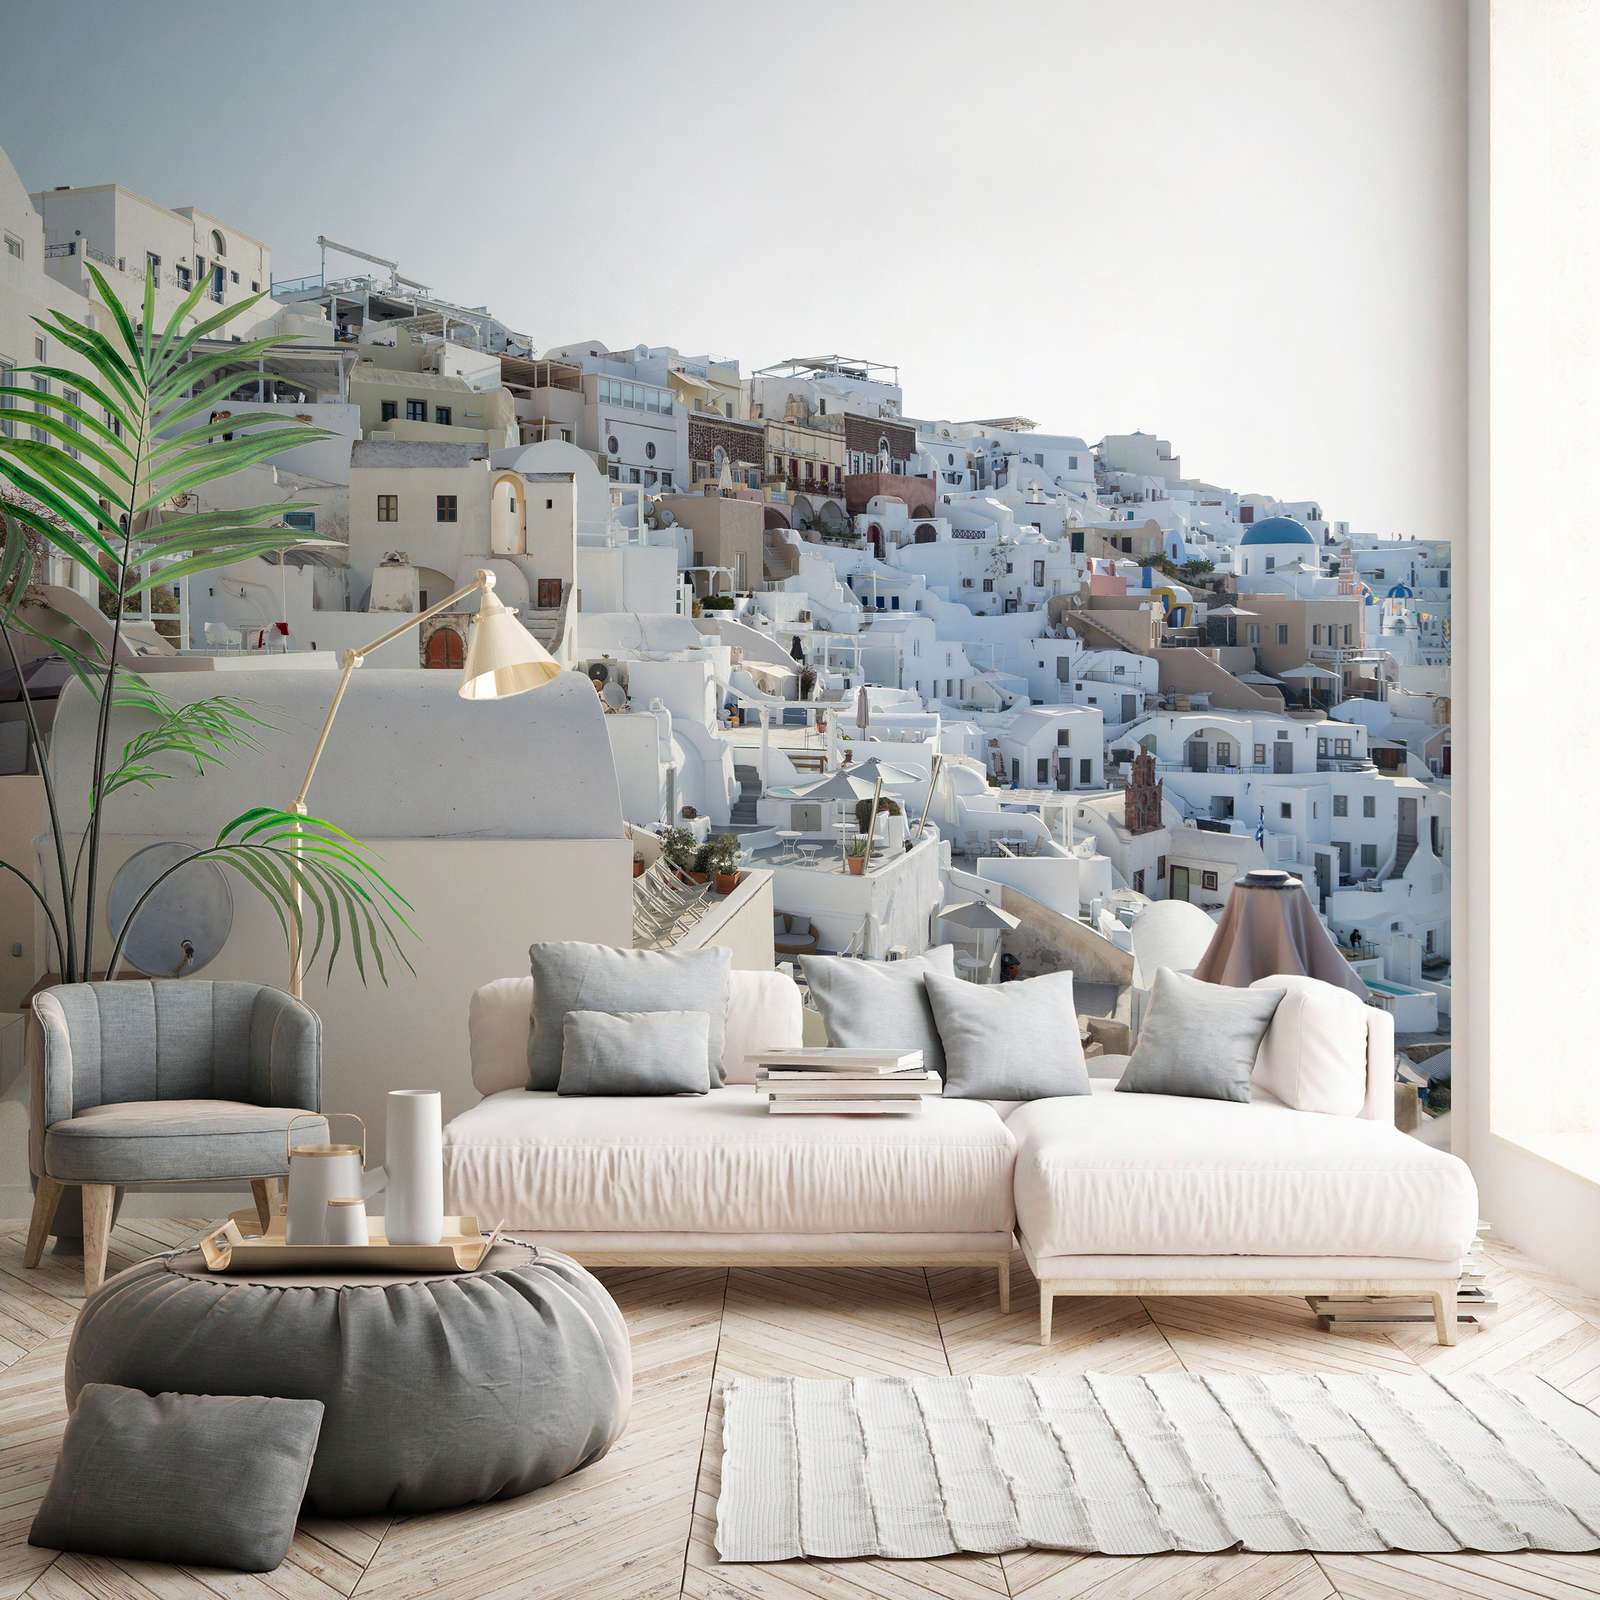             Digital behang Santorini in de middagzon - Premium smooth fleece
        